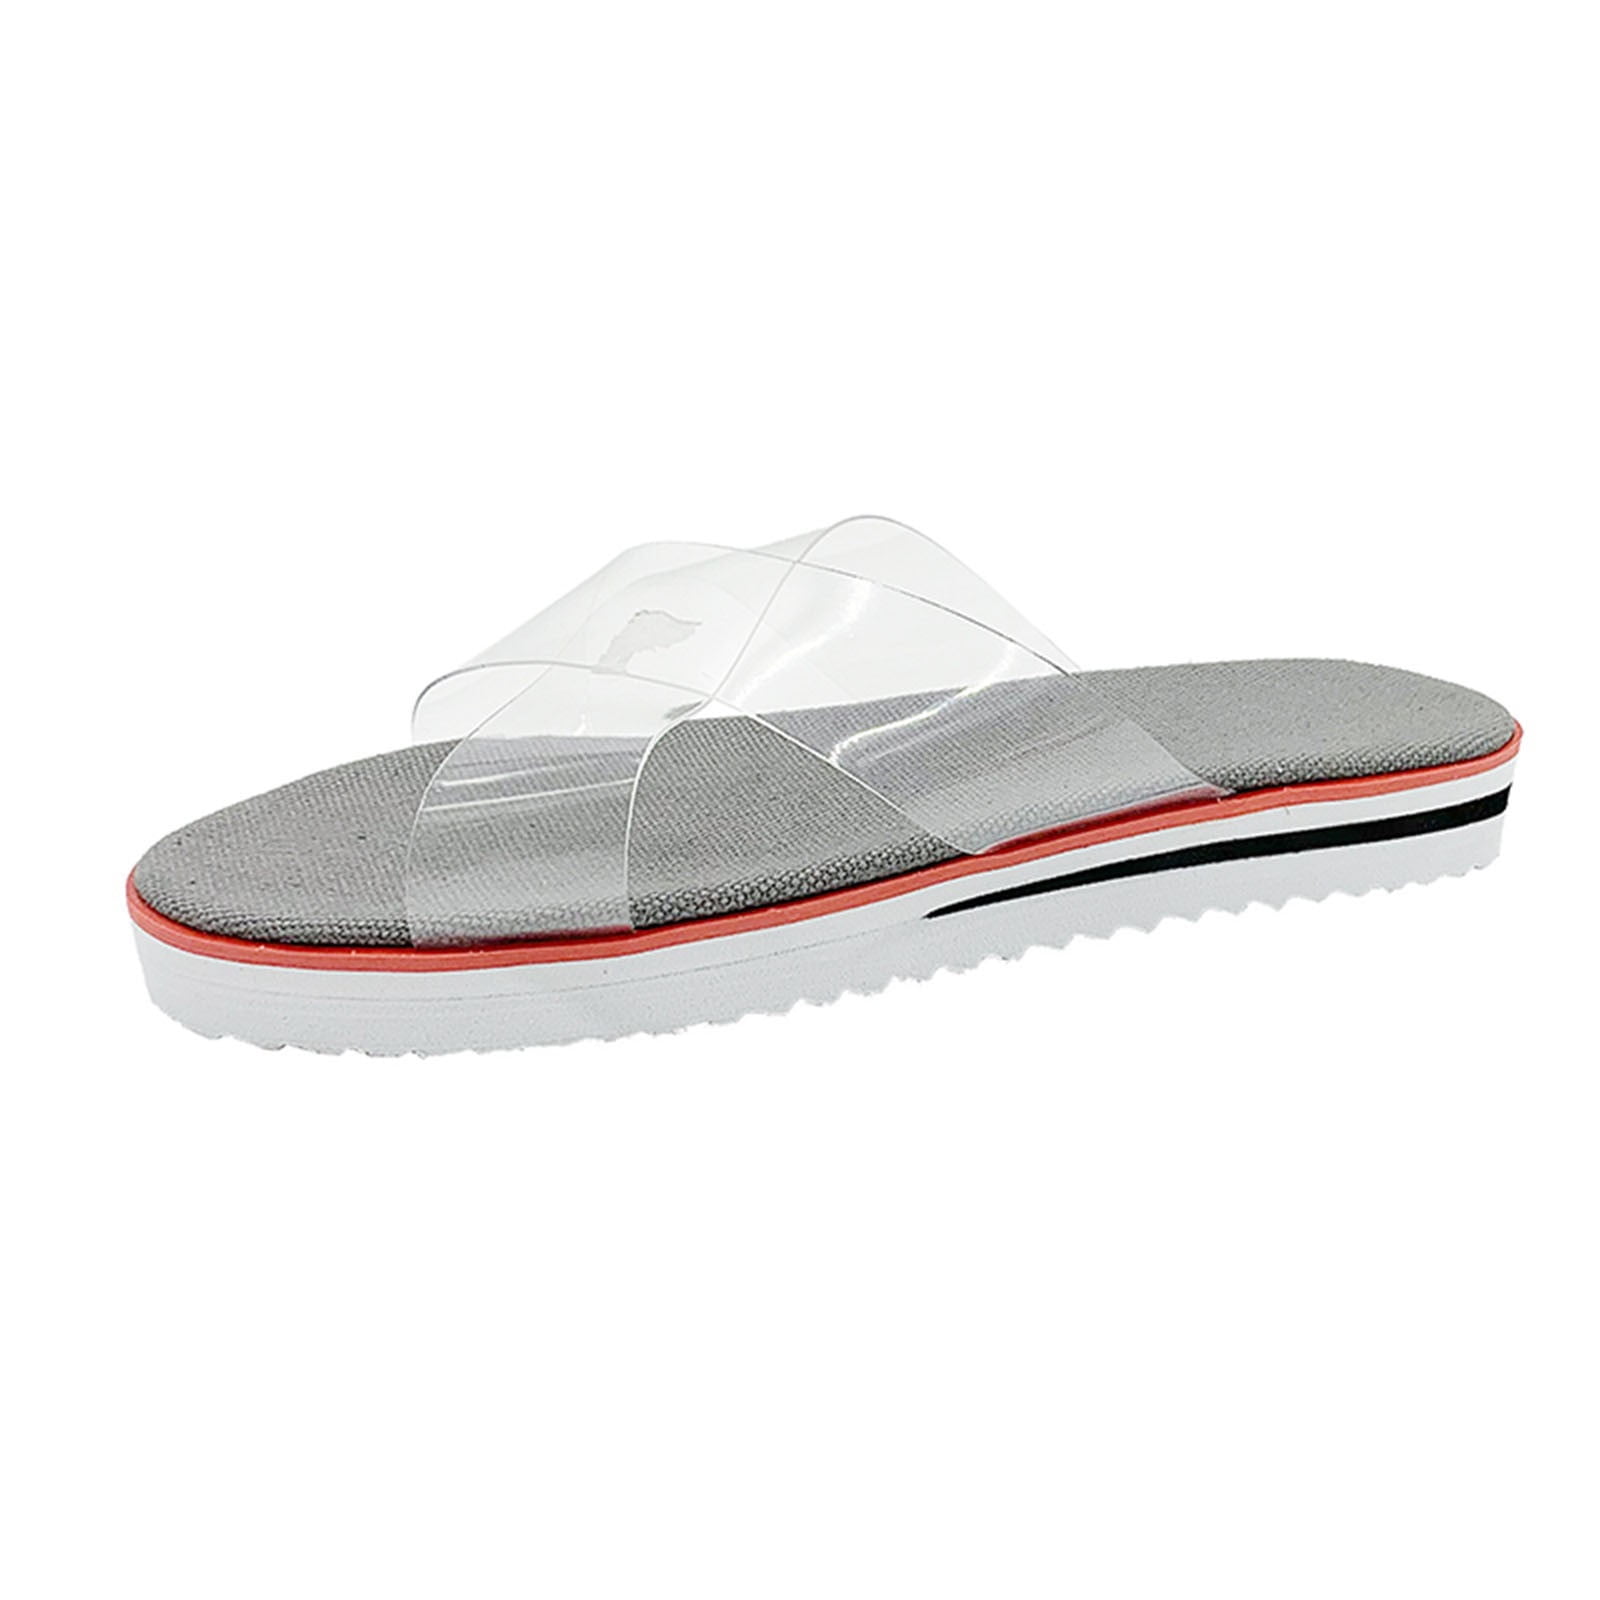 Womens Transparent Flip flops Sandals Beach Casual Slippers Shoes Flat Heel 